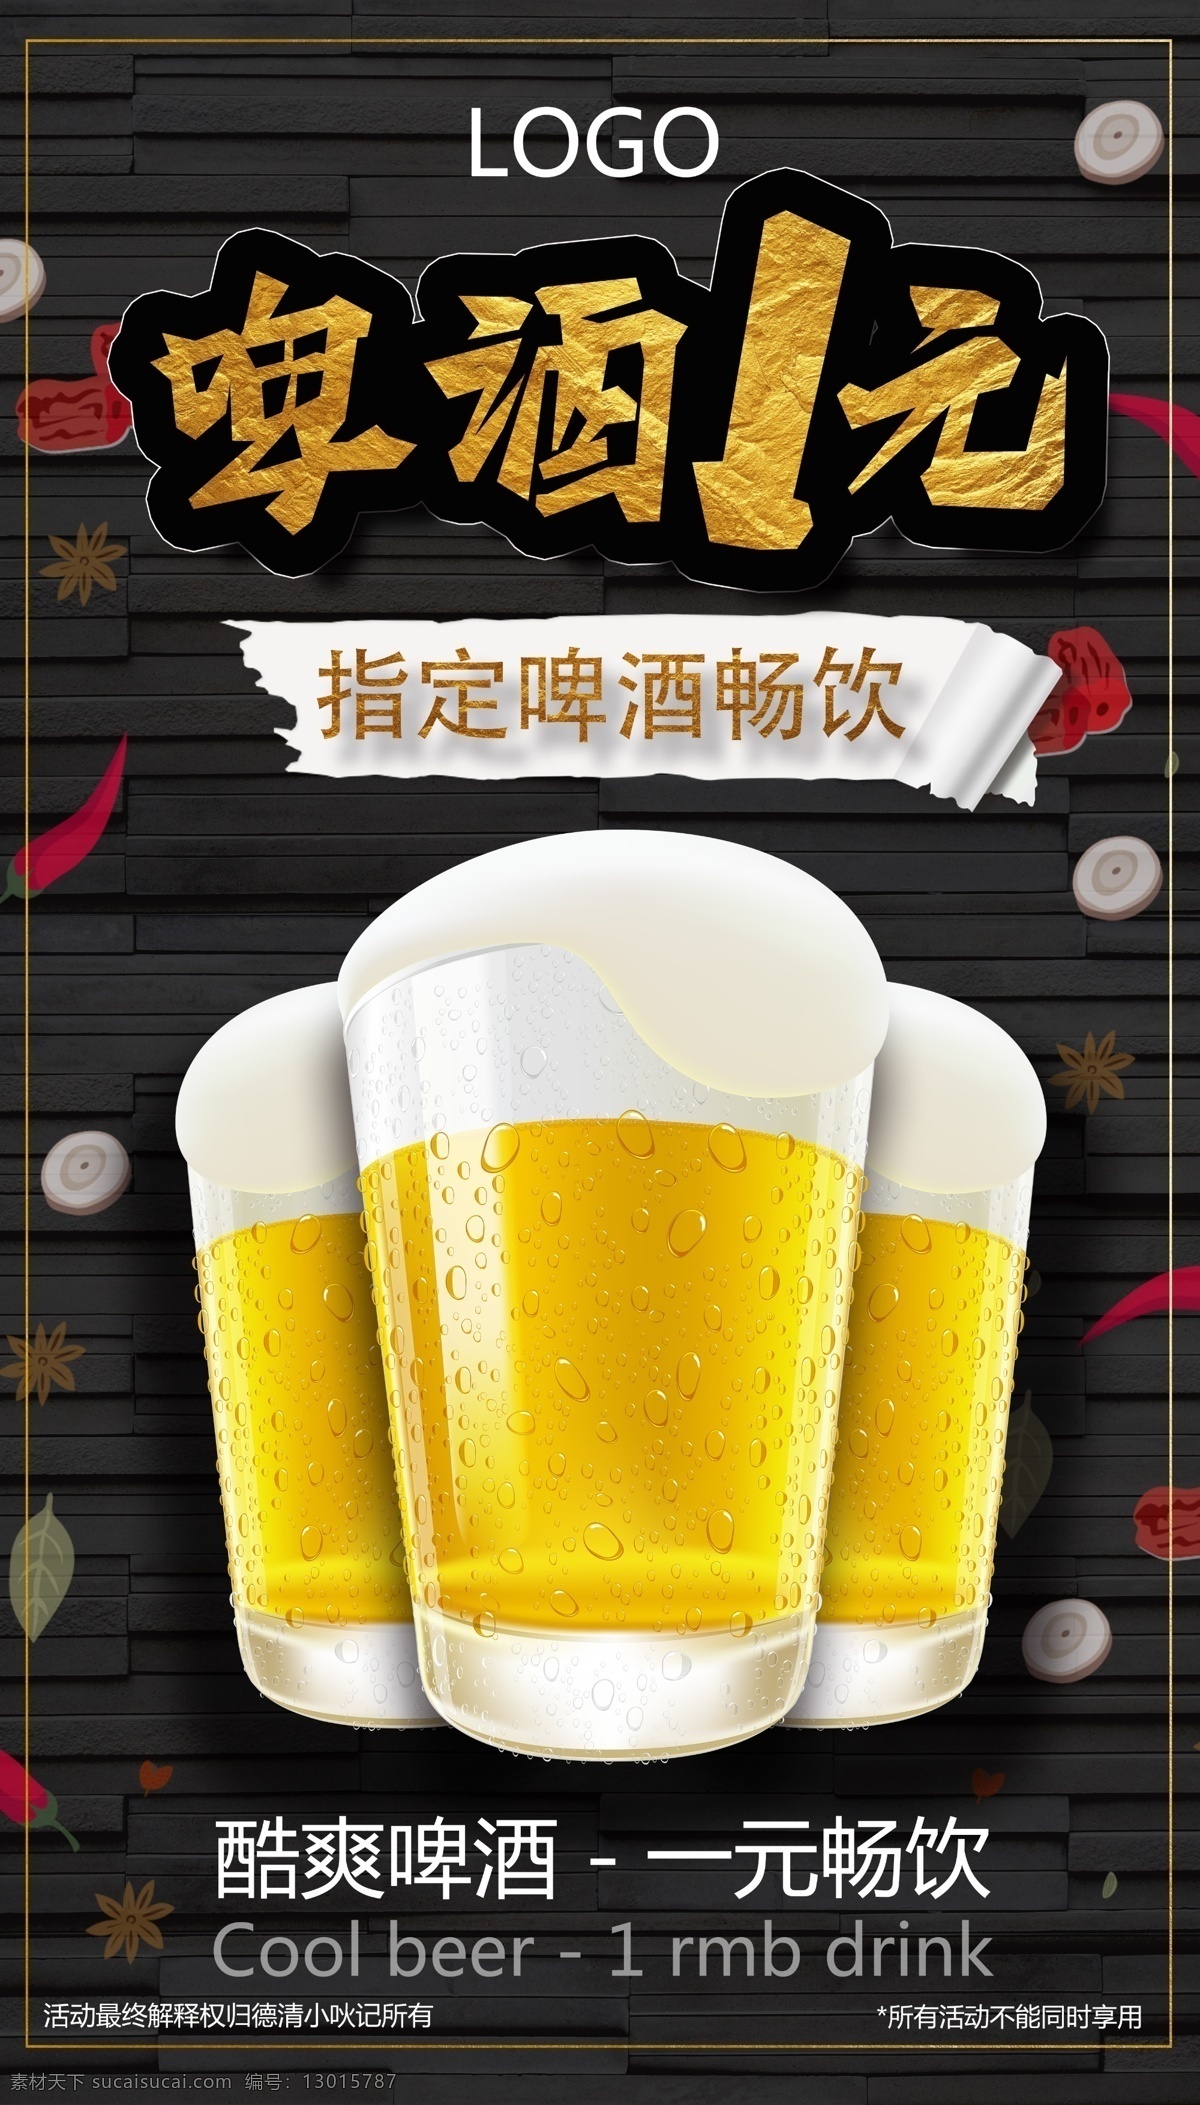 啤酒 一元 畅饮 海报 啤酒海报 一元畅饮海报 一元畅饮 啤酒畅饮 啤酒畅饮海报 啤酒活动 啤酒活动海报